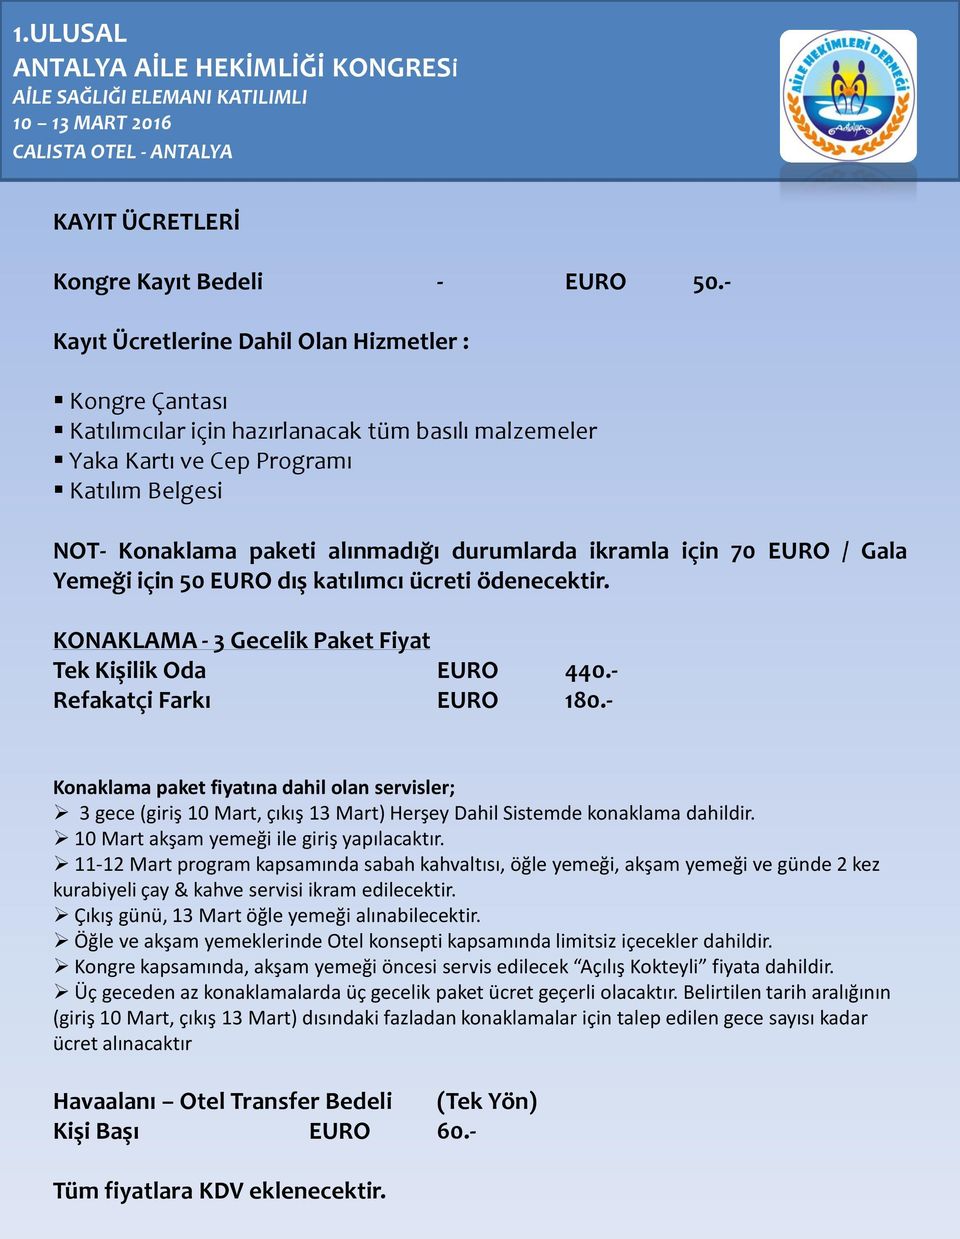 ikramla için 70 EURO / Gala Yemeği için 50 EURO dış katılımcı ücreti ödenecektir. KONAKLAMA - 3 Gecelik Paket Fiyat Tek Kişilik Oda EURO 440.- Refakatçi Farkı EURO 180.